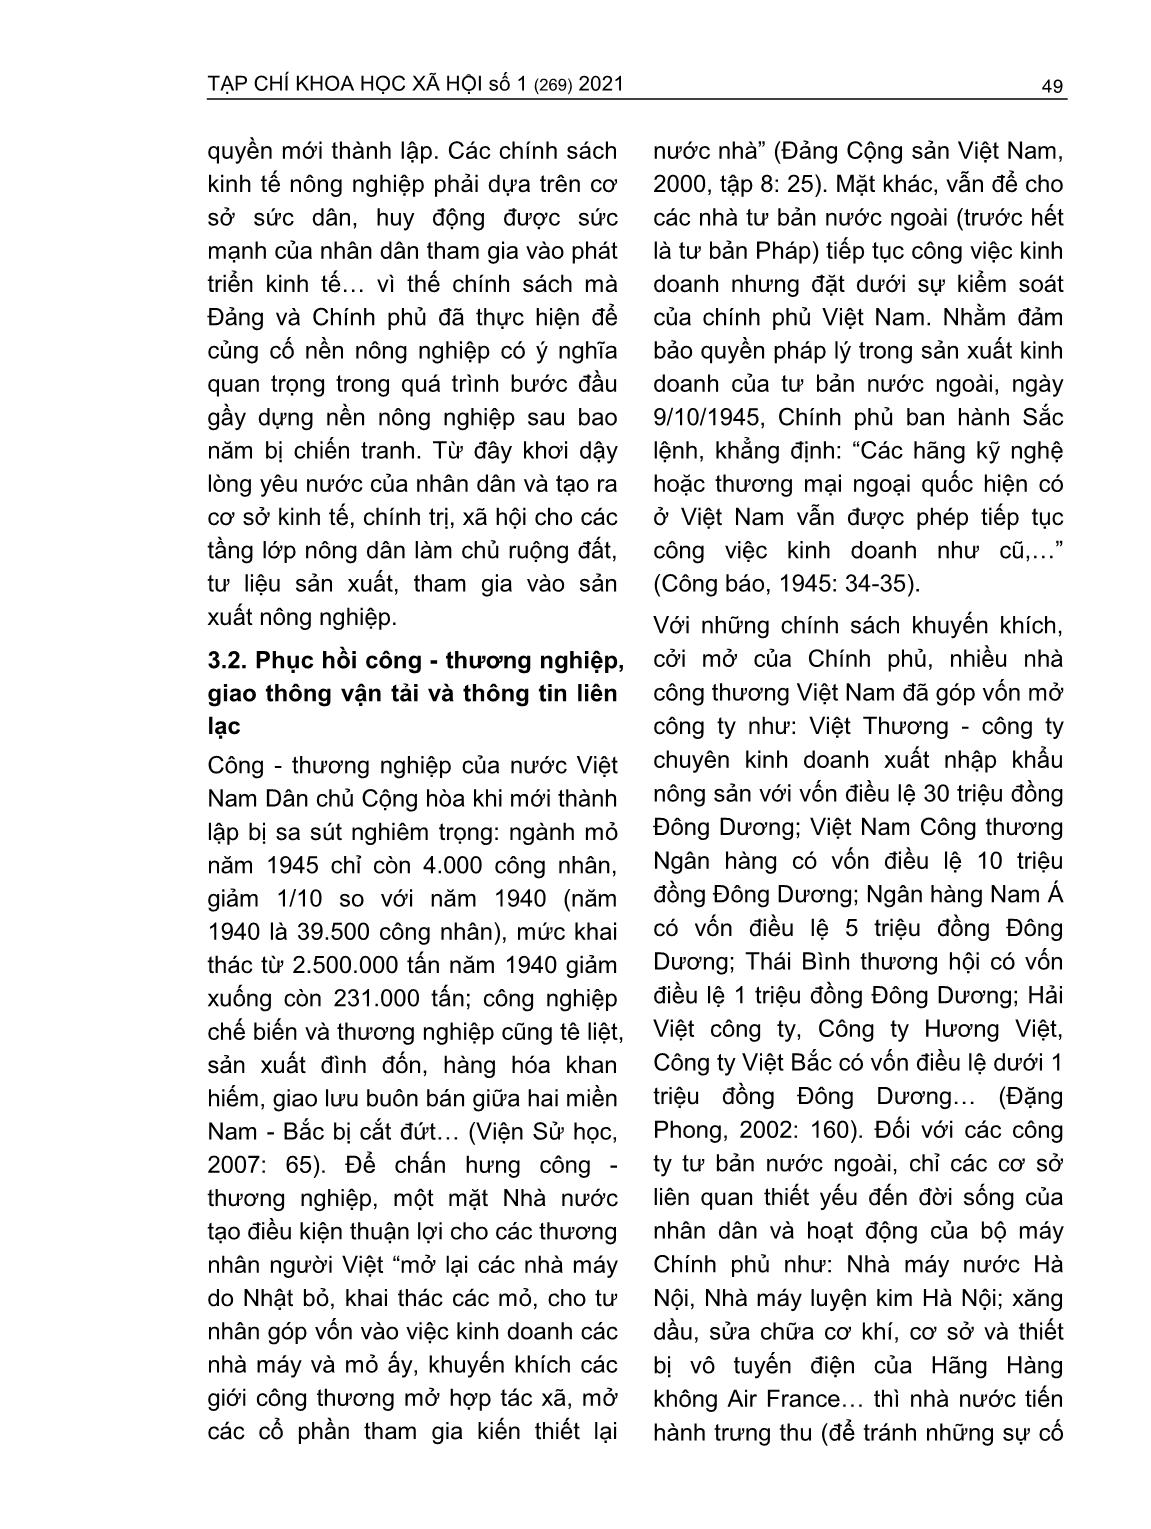 Những biện pháp vượt qua khó khăn về kinh tế của nước Việt Nam Dân chủ Cộng hòa trong thời gian đầu mới thành lập (8/1945-12/1946) trang 5